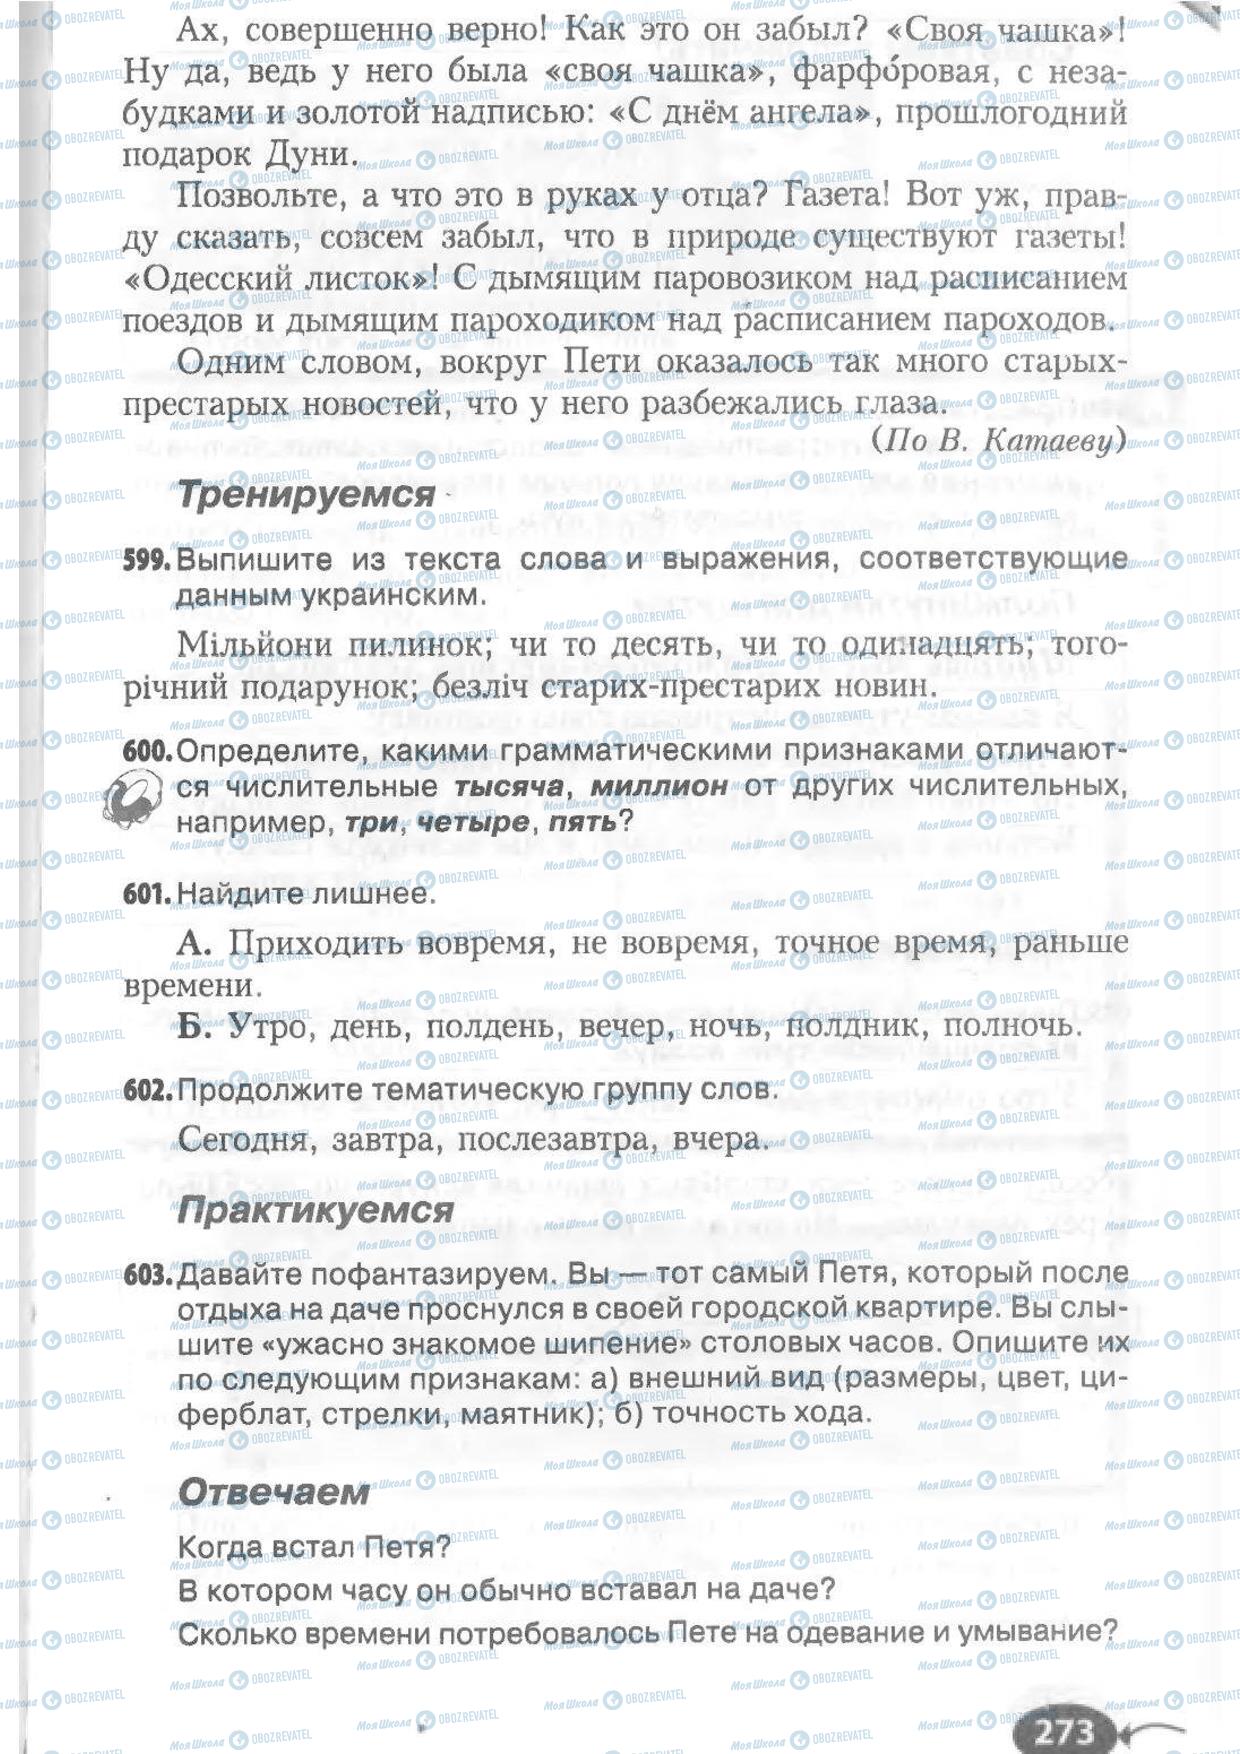 Підручники Російська мова 6 клас сторінка 273